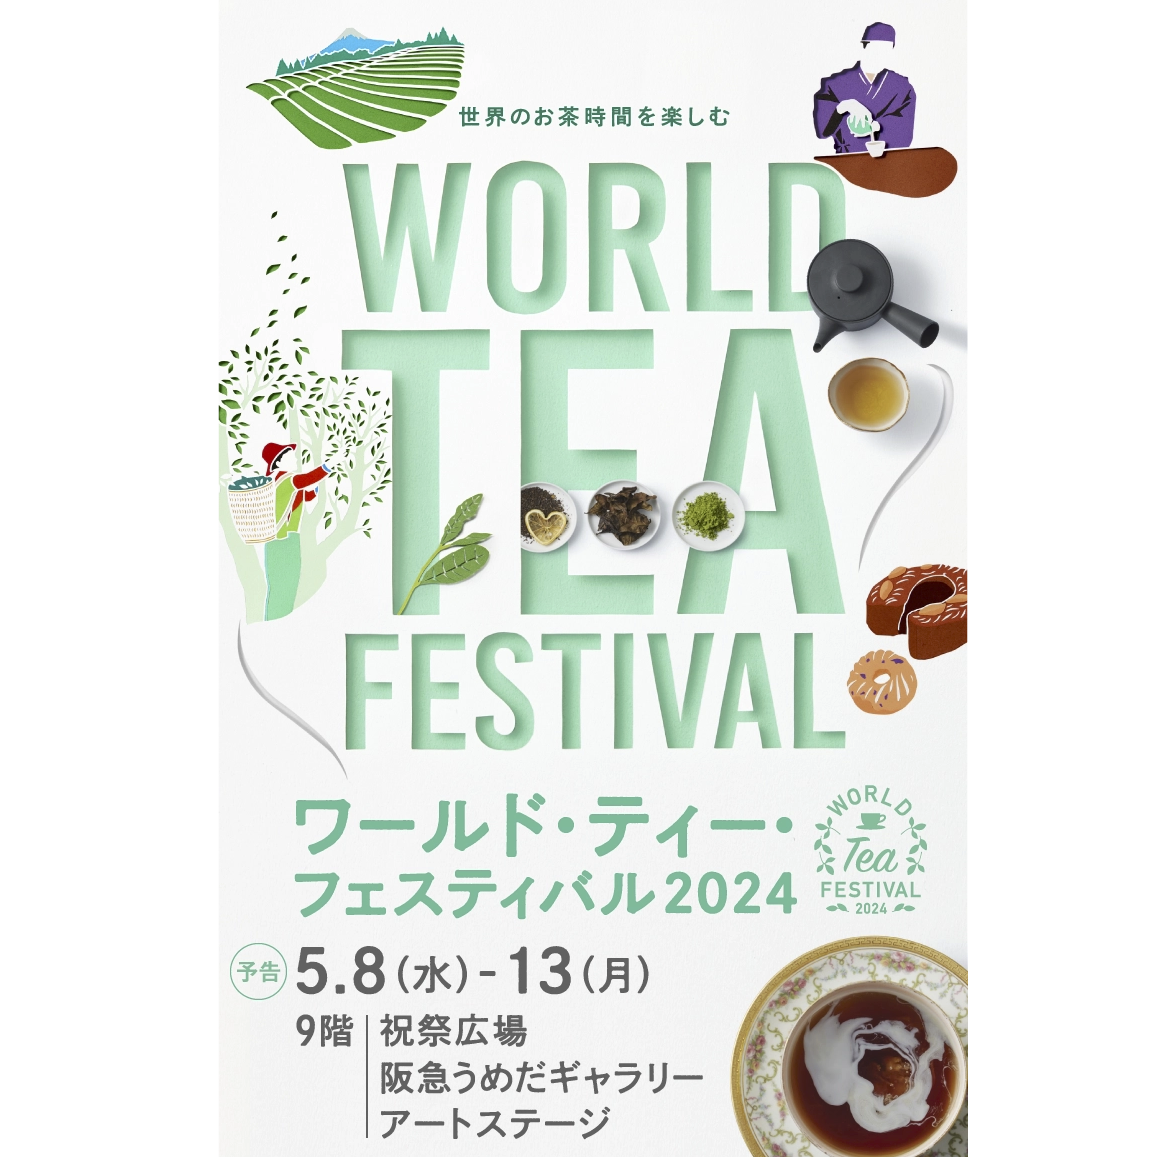 【EVENT】阪急うめだ本店「ワールドティーフェスティバル2024」出展のお知らせ